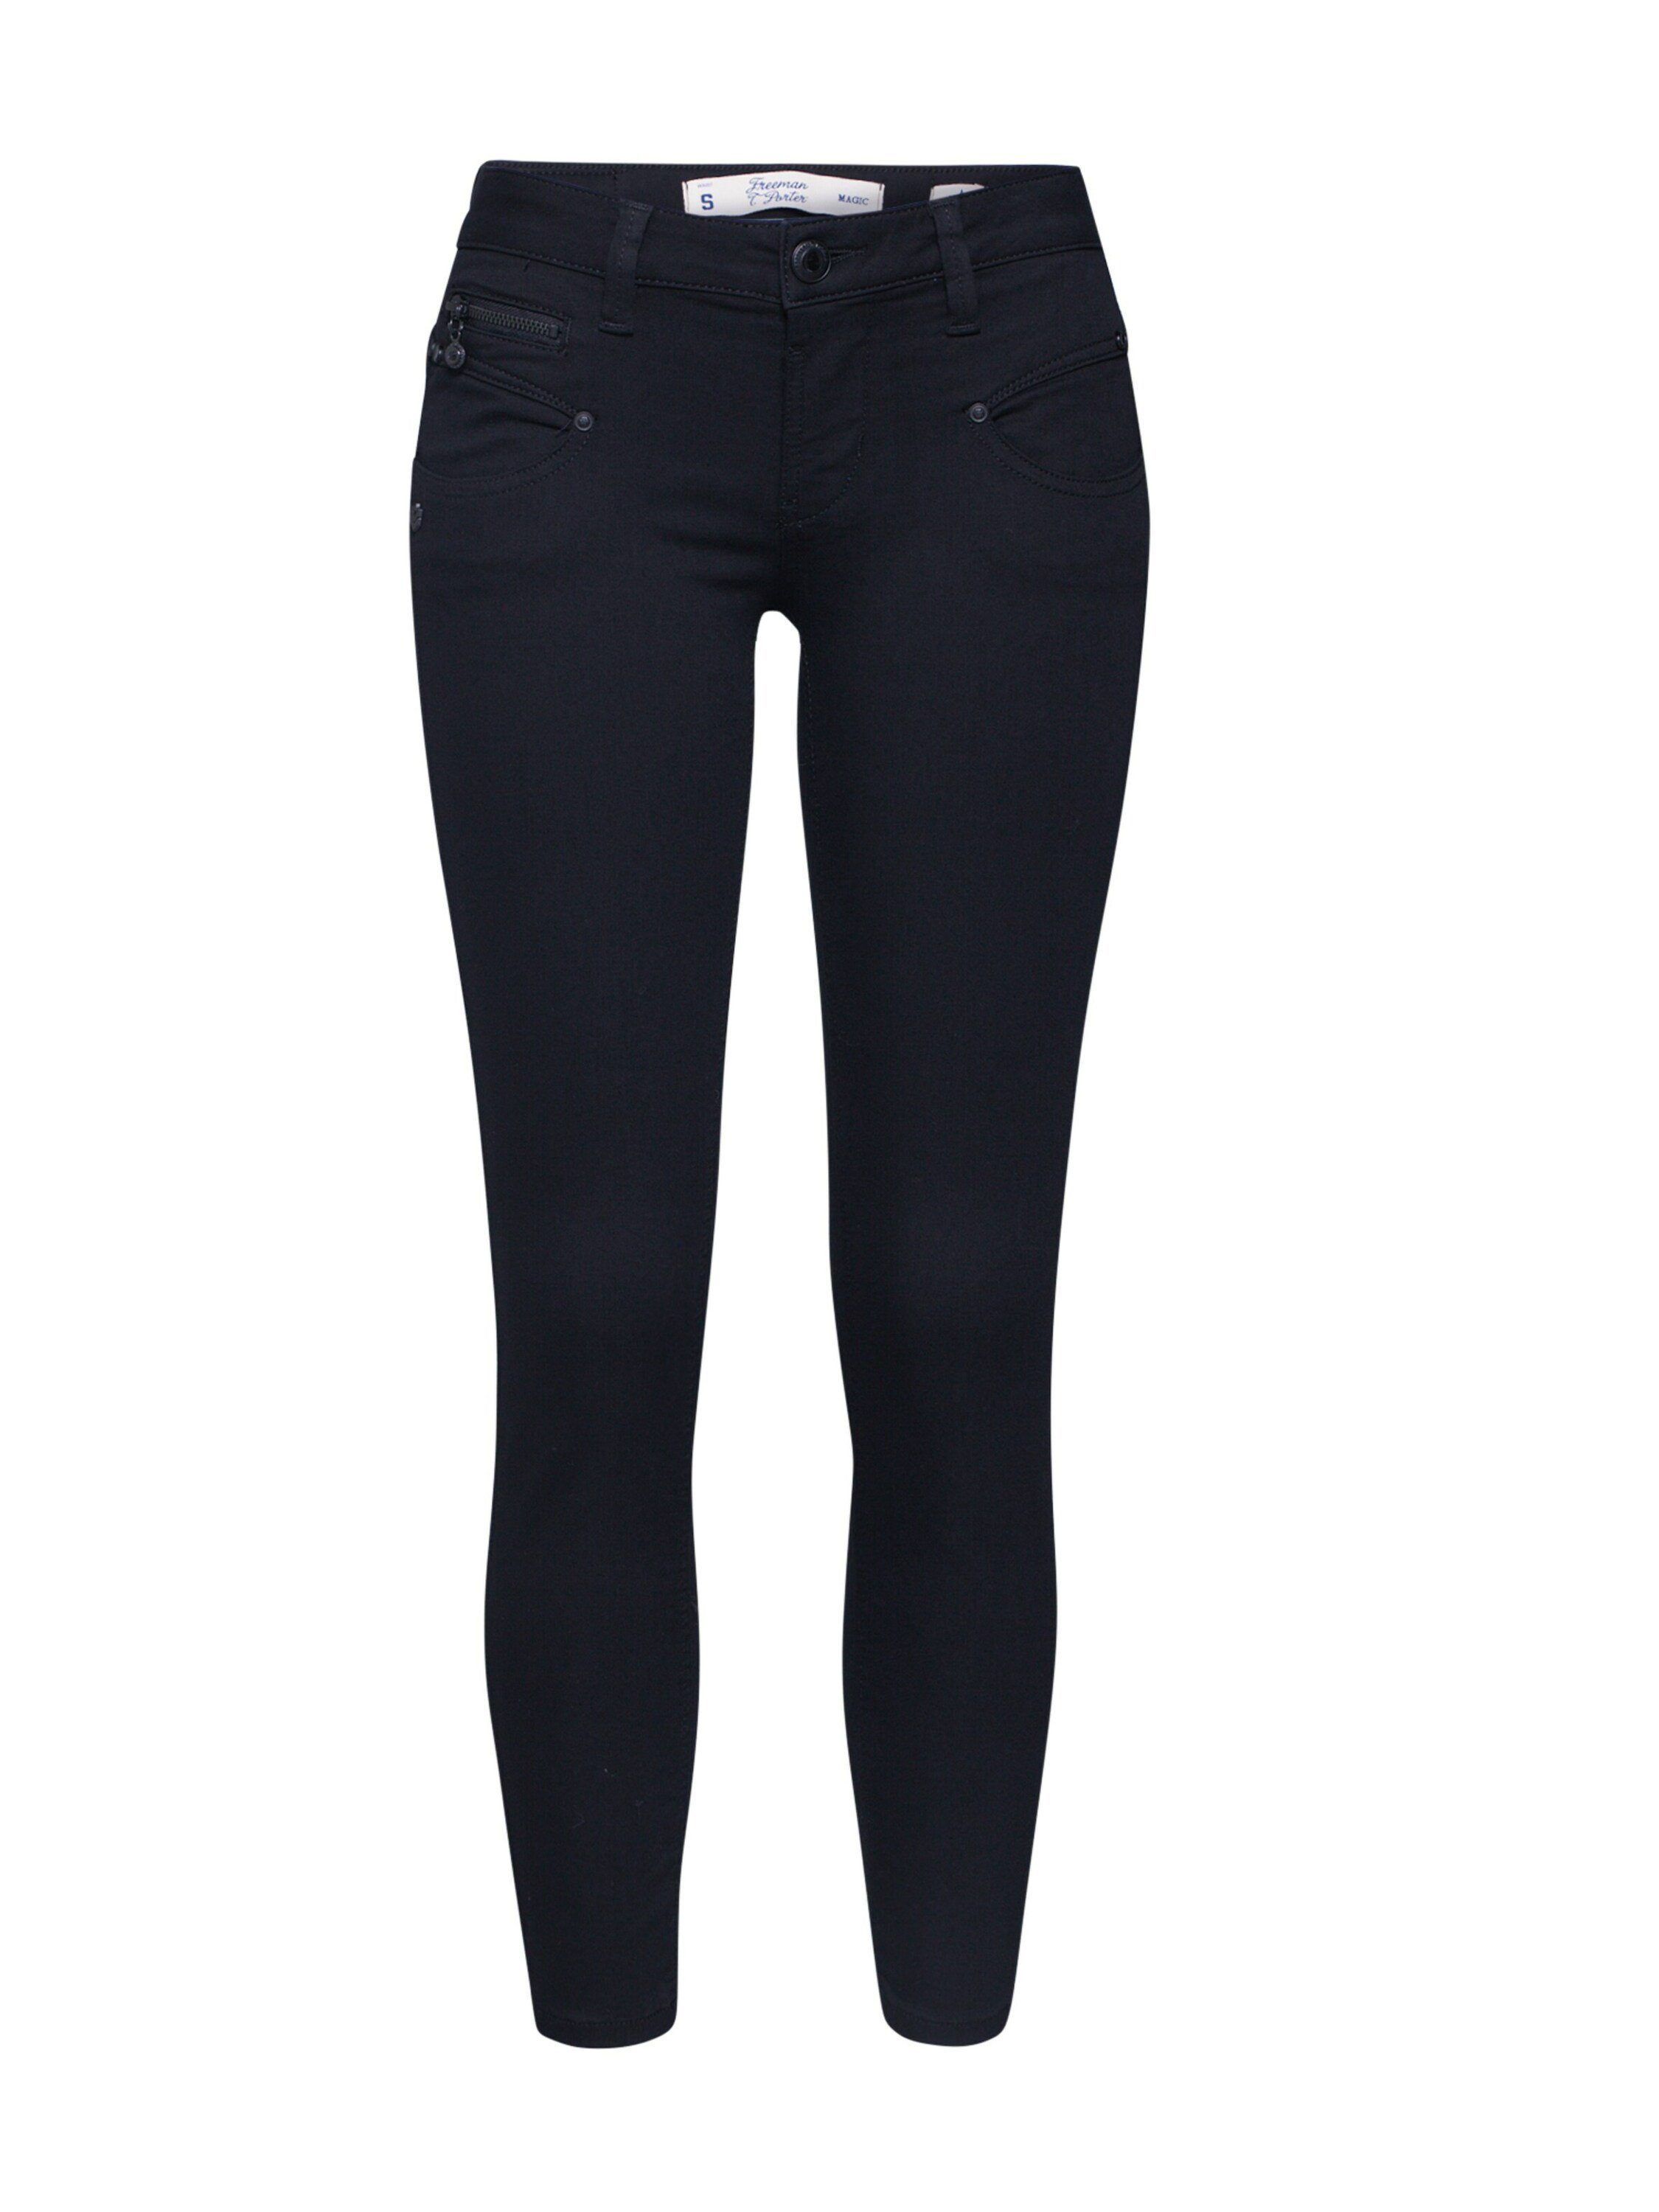 Porter 12 Plain/ohne Weiteres 7/8-Jeans Detail Ziersteine, Details, Alexa black (1-tlg) T. Freeman